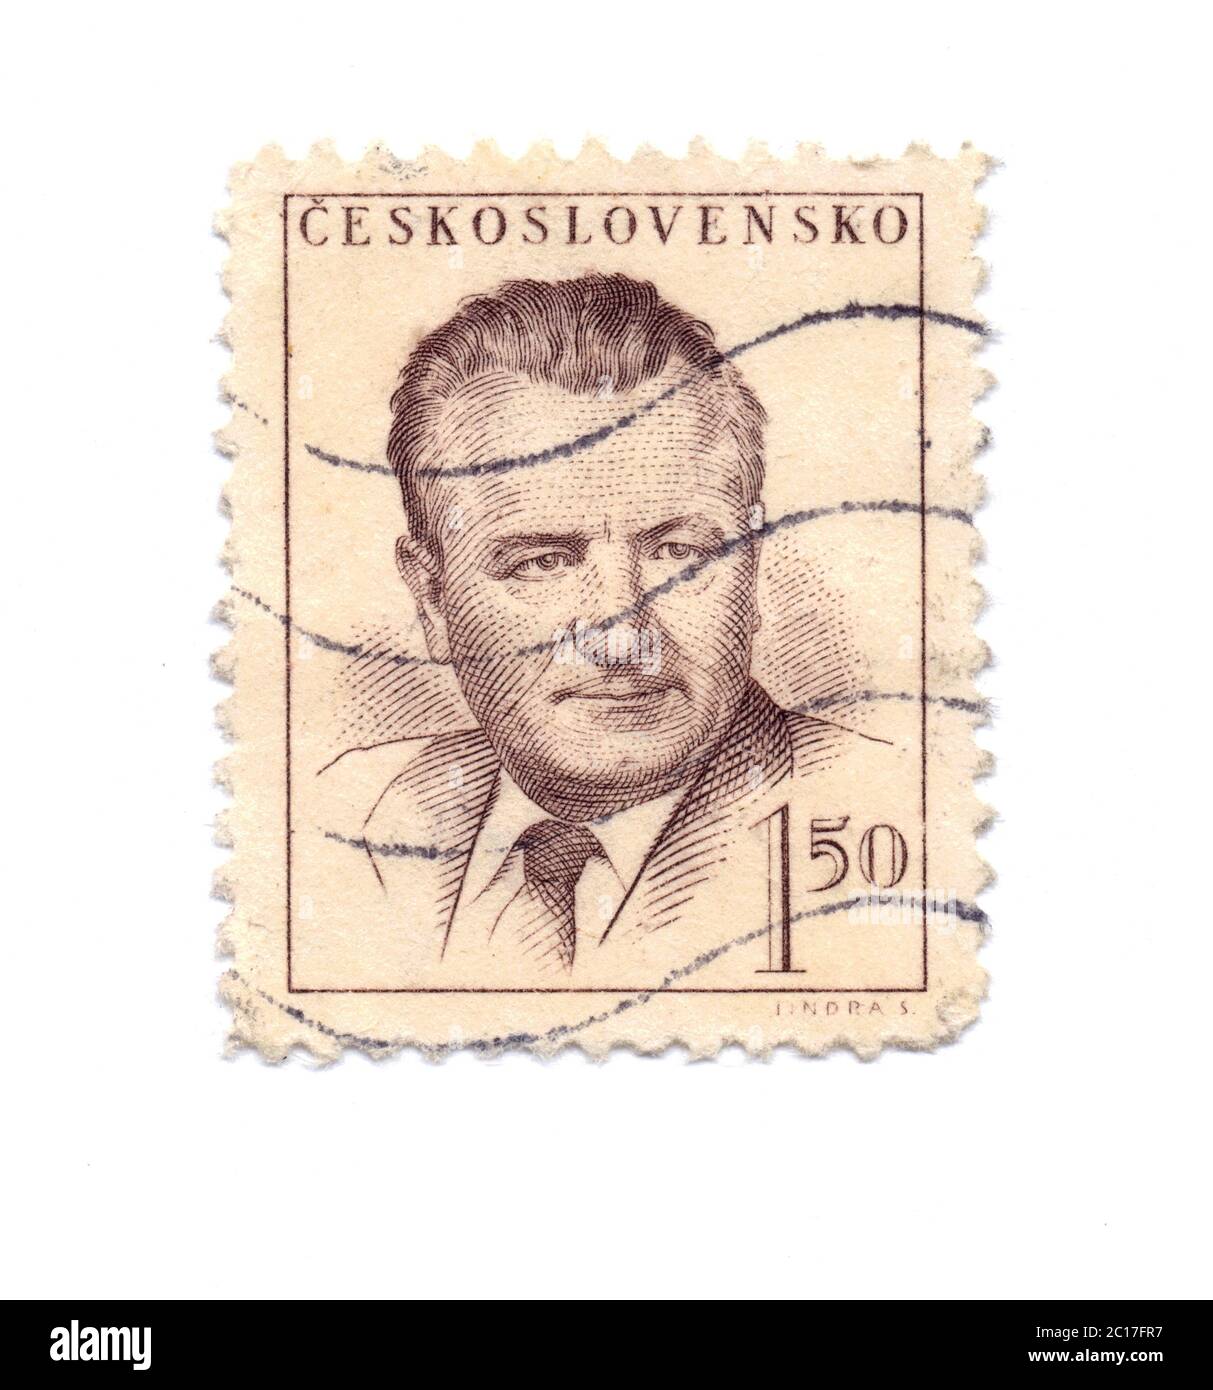 Francobollo Klement Gottwald, Cecoslovacchia 1948. Primo ministro comunista, presidente, politico. Valore: 1,50 corone Foto Stock